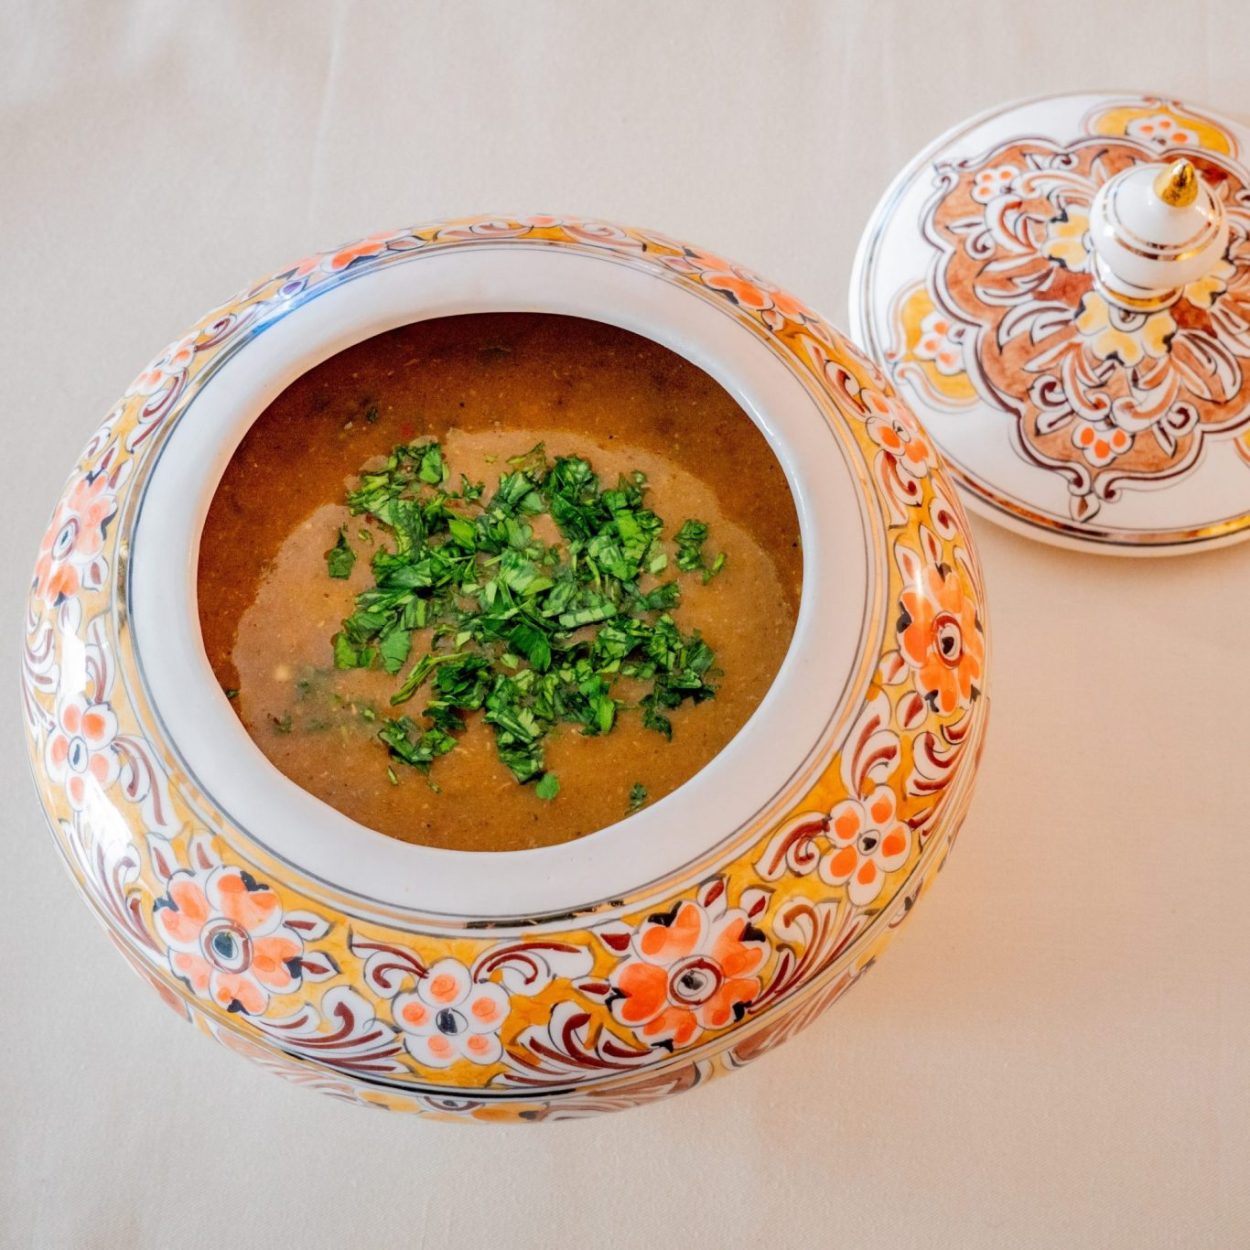 Hrira – Soupe au levain - Recette algérienne